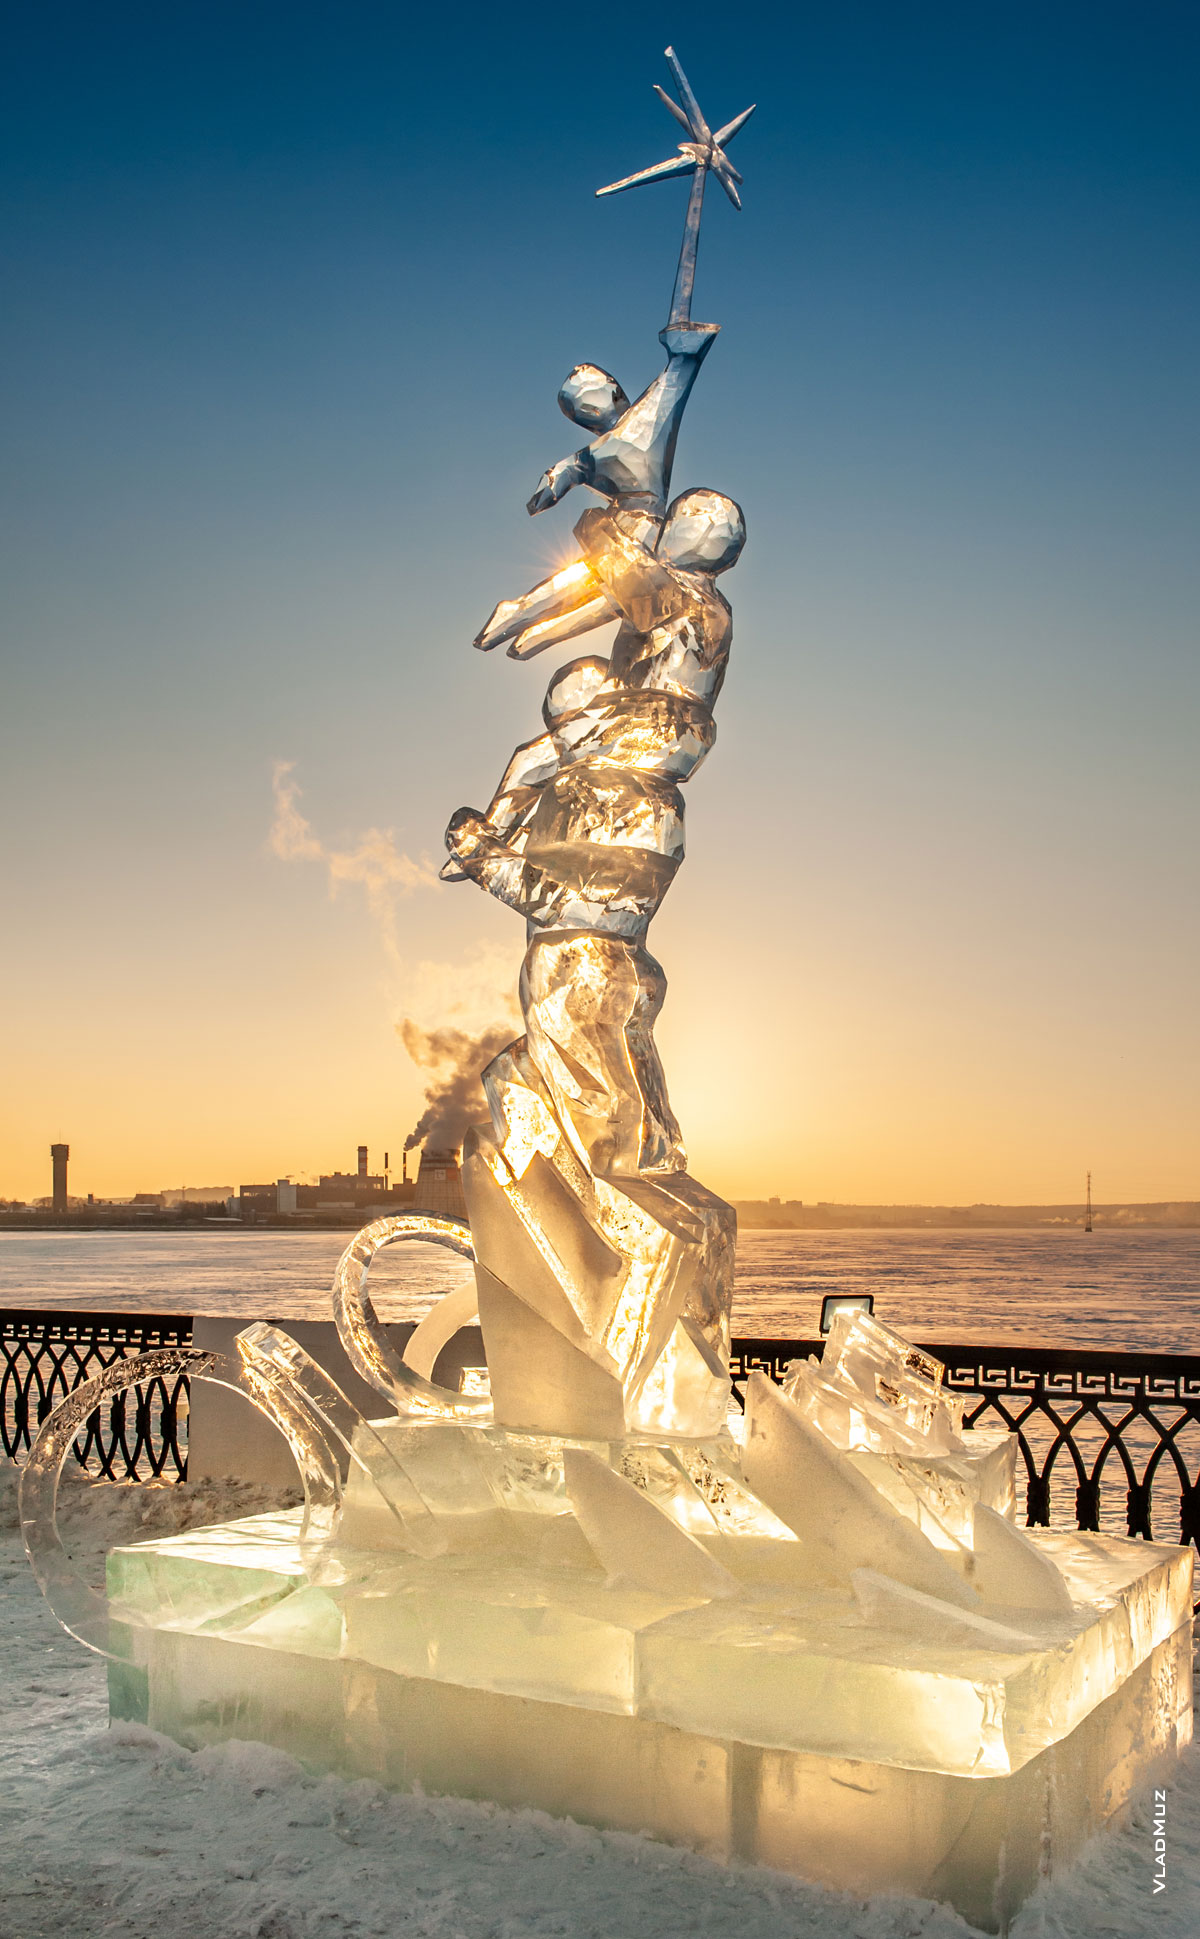 Ижевск, фестиваль «Удмуртский лед 2018»: фото ледовой скульптуры «Преодоление»